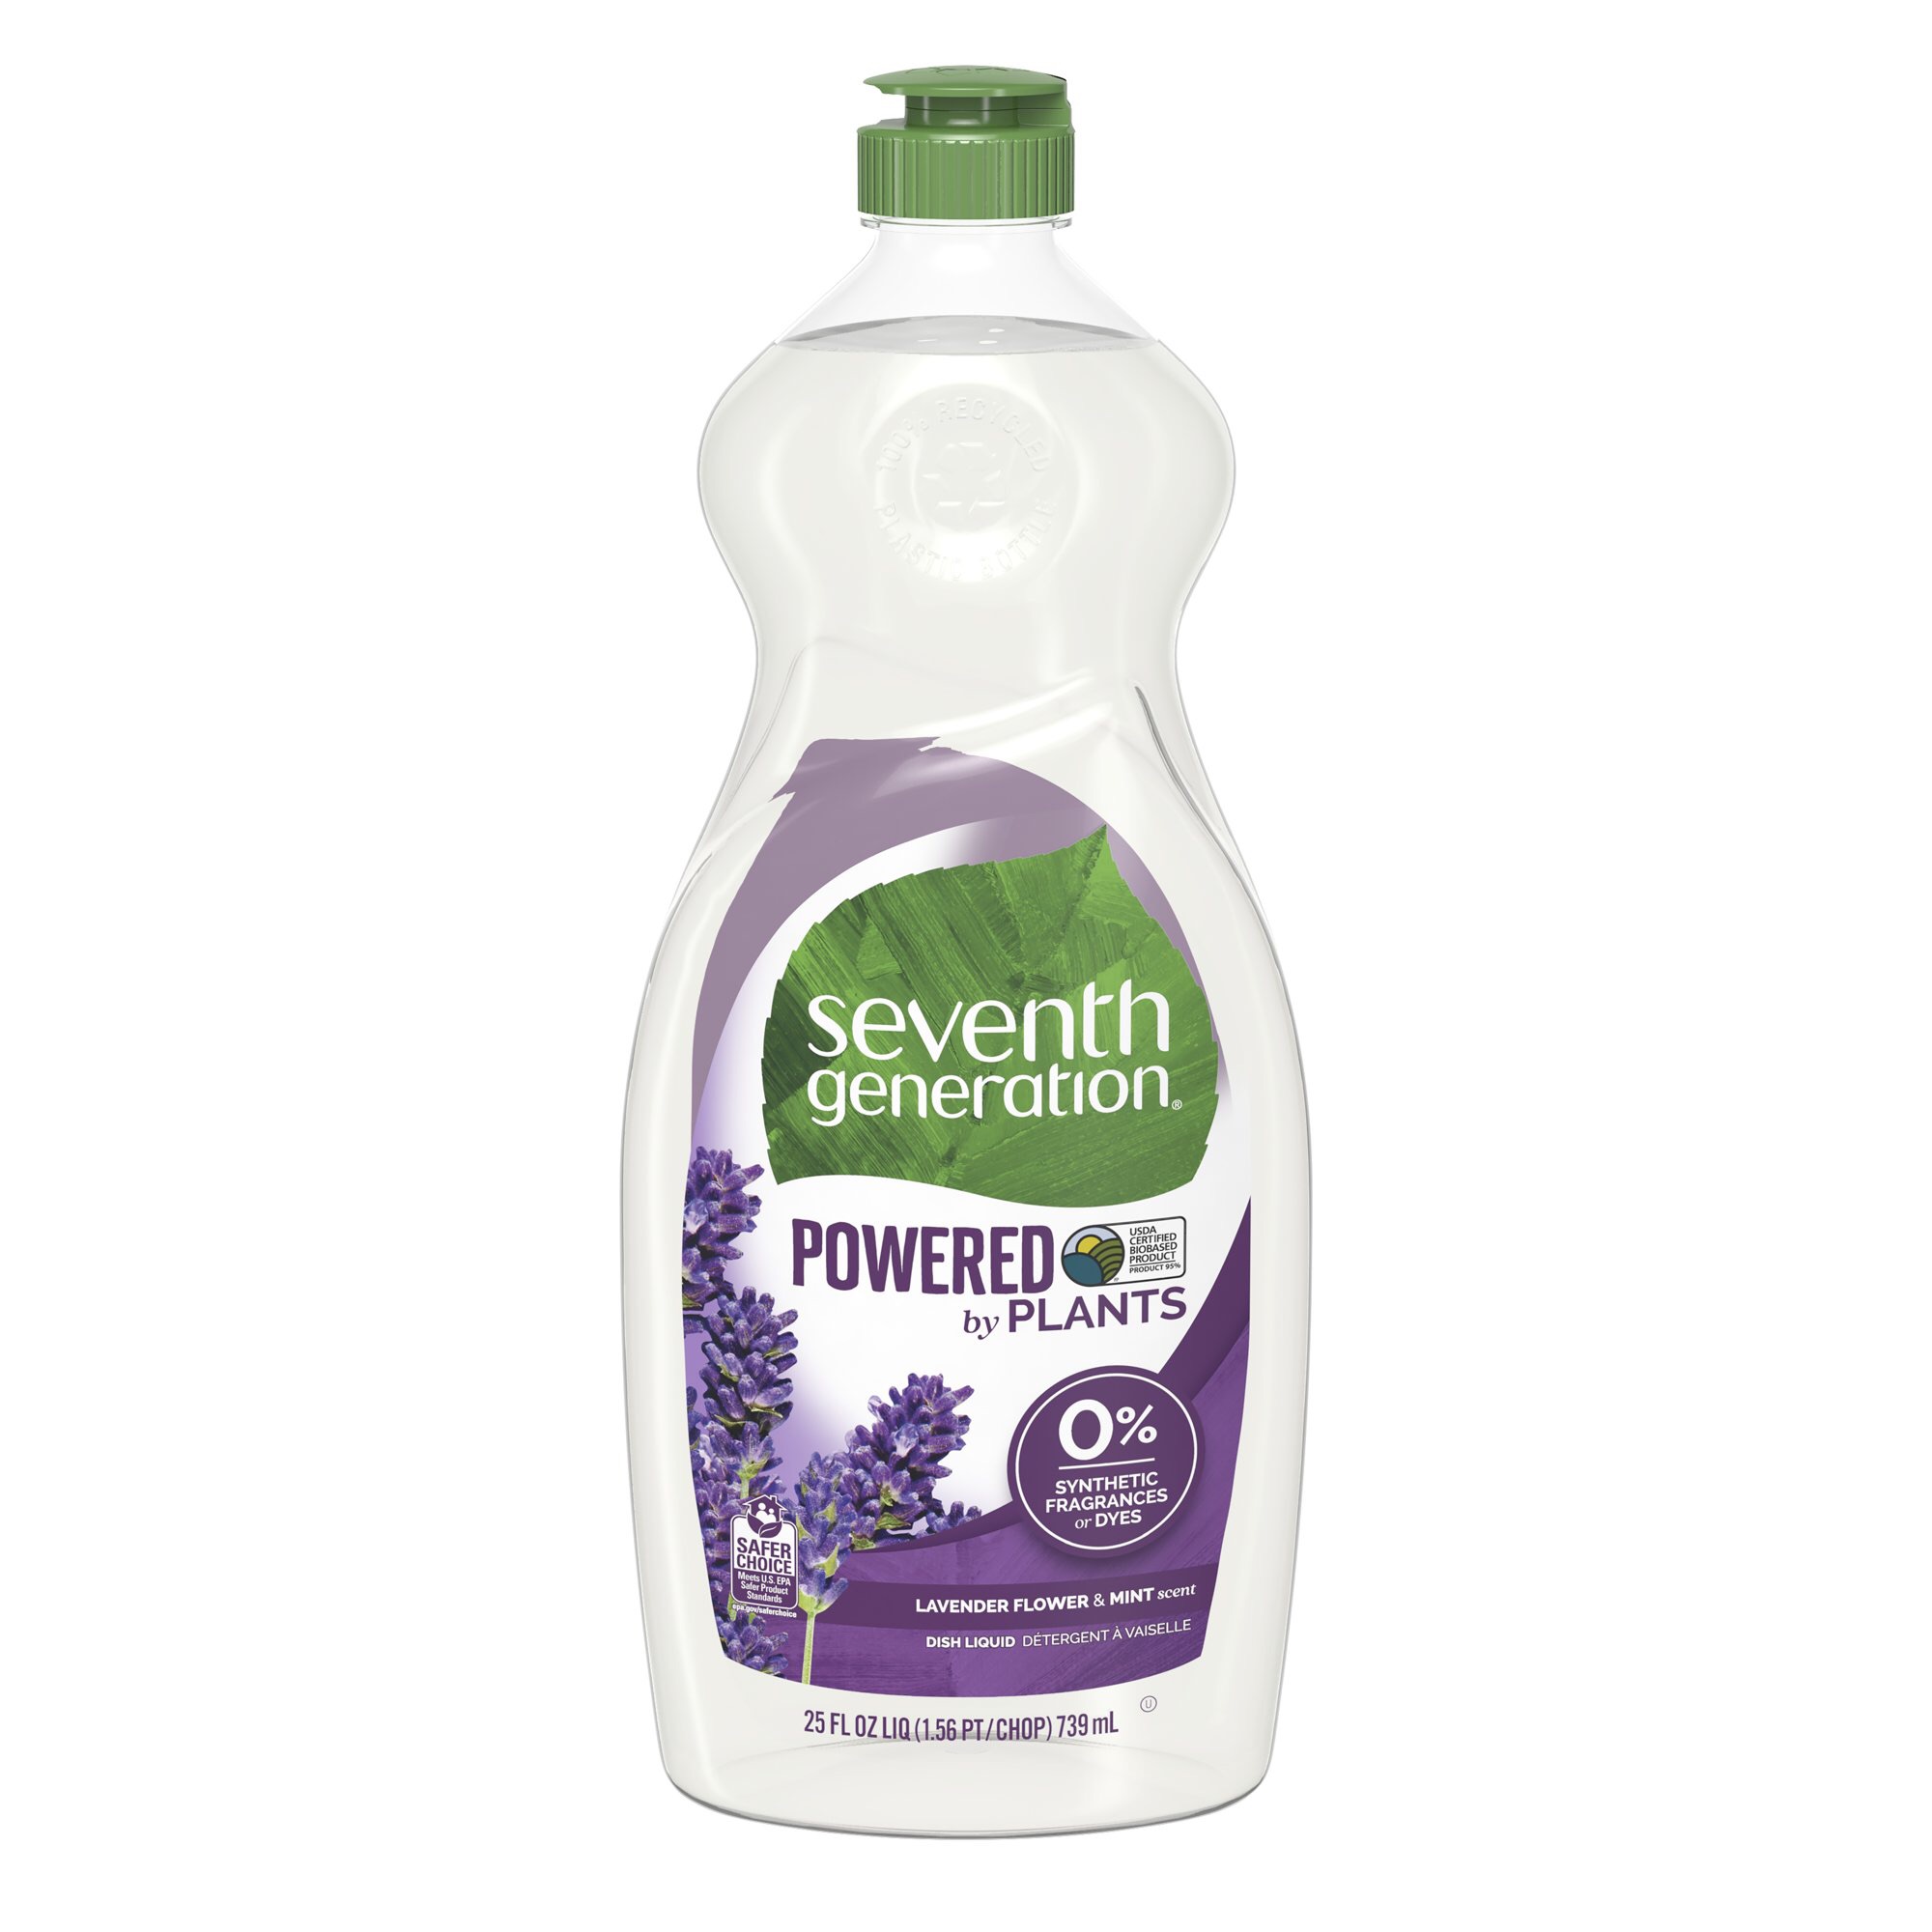 Seventh Generation Lavender Floral & Mint Dish Liquid Soap, 25 oz - Walmart.com - Walmart.com洗洁精